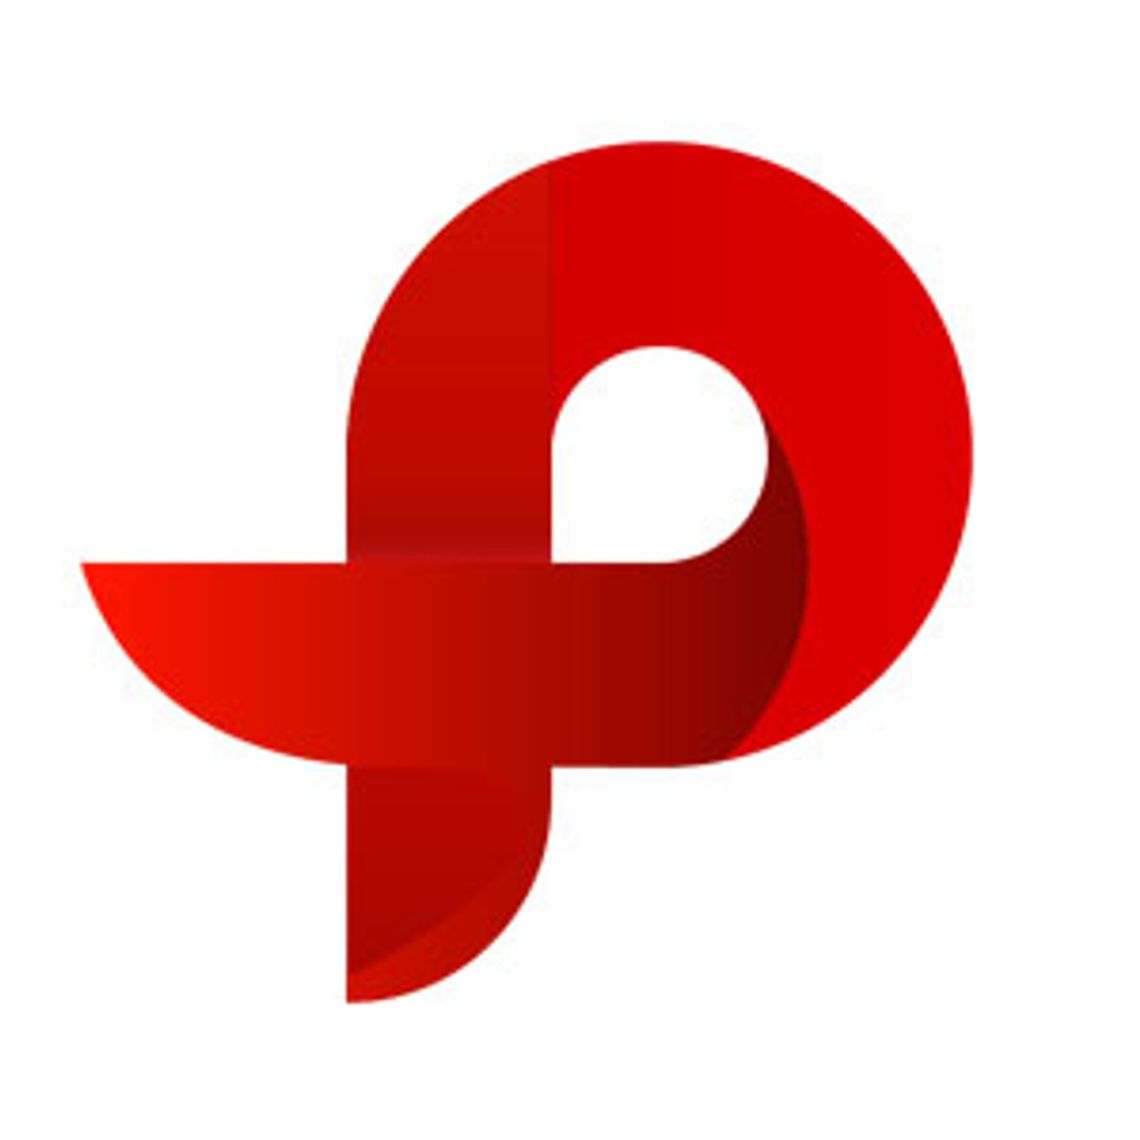 PP Design Studio - Projektowanie stron internetowych